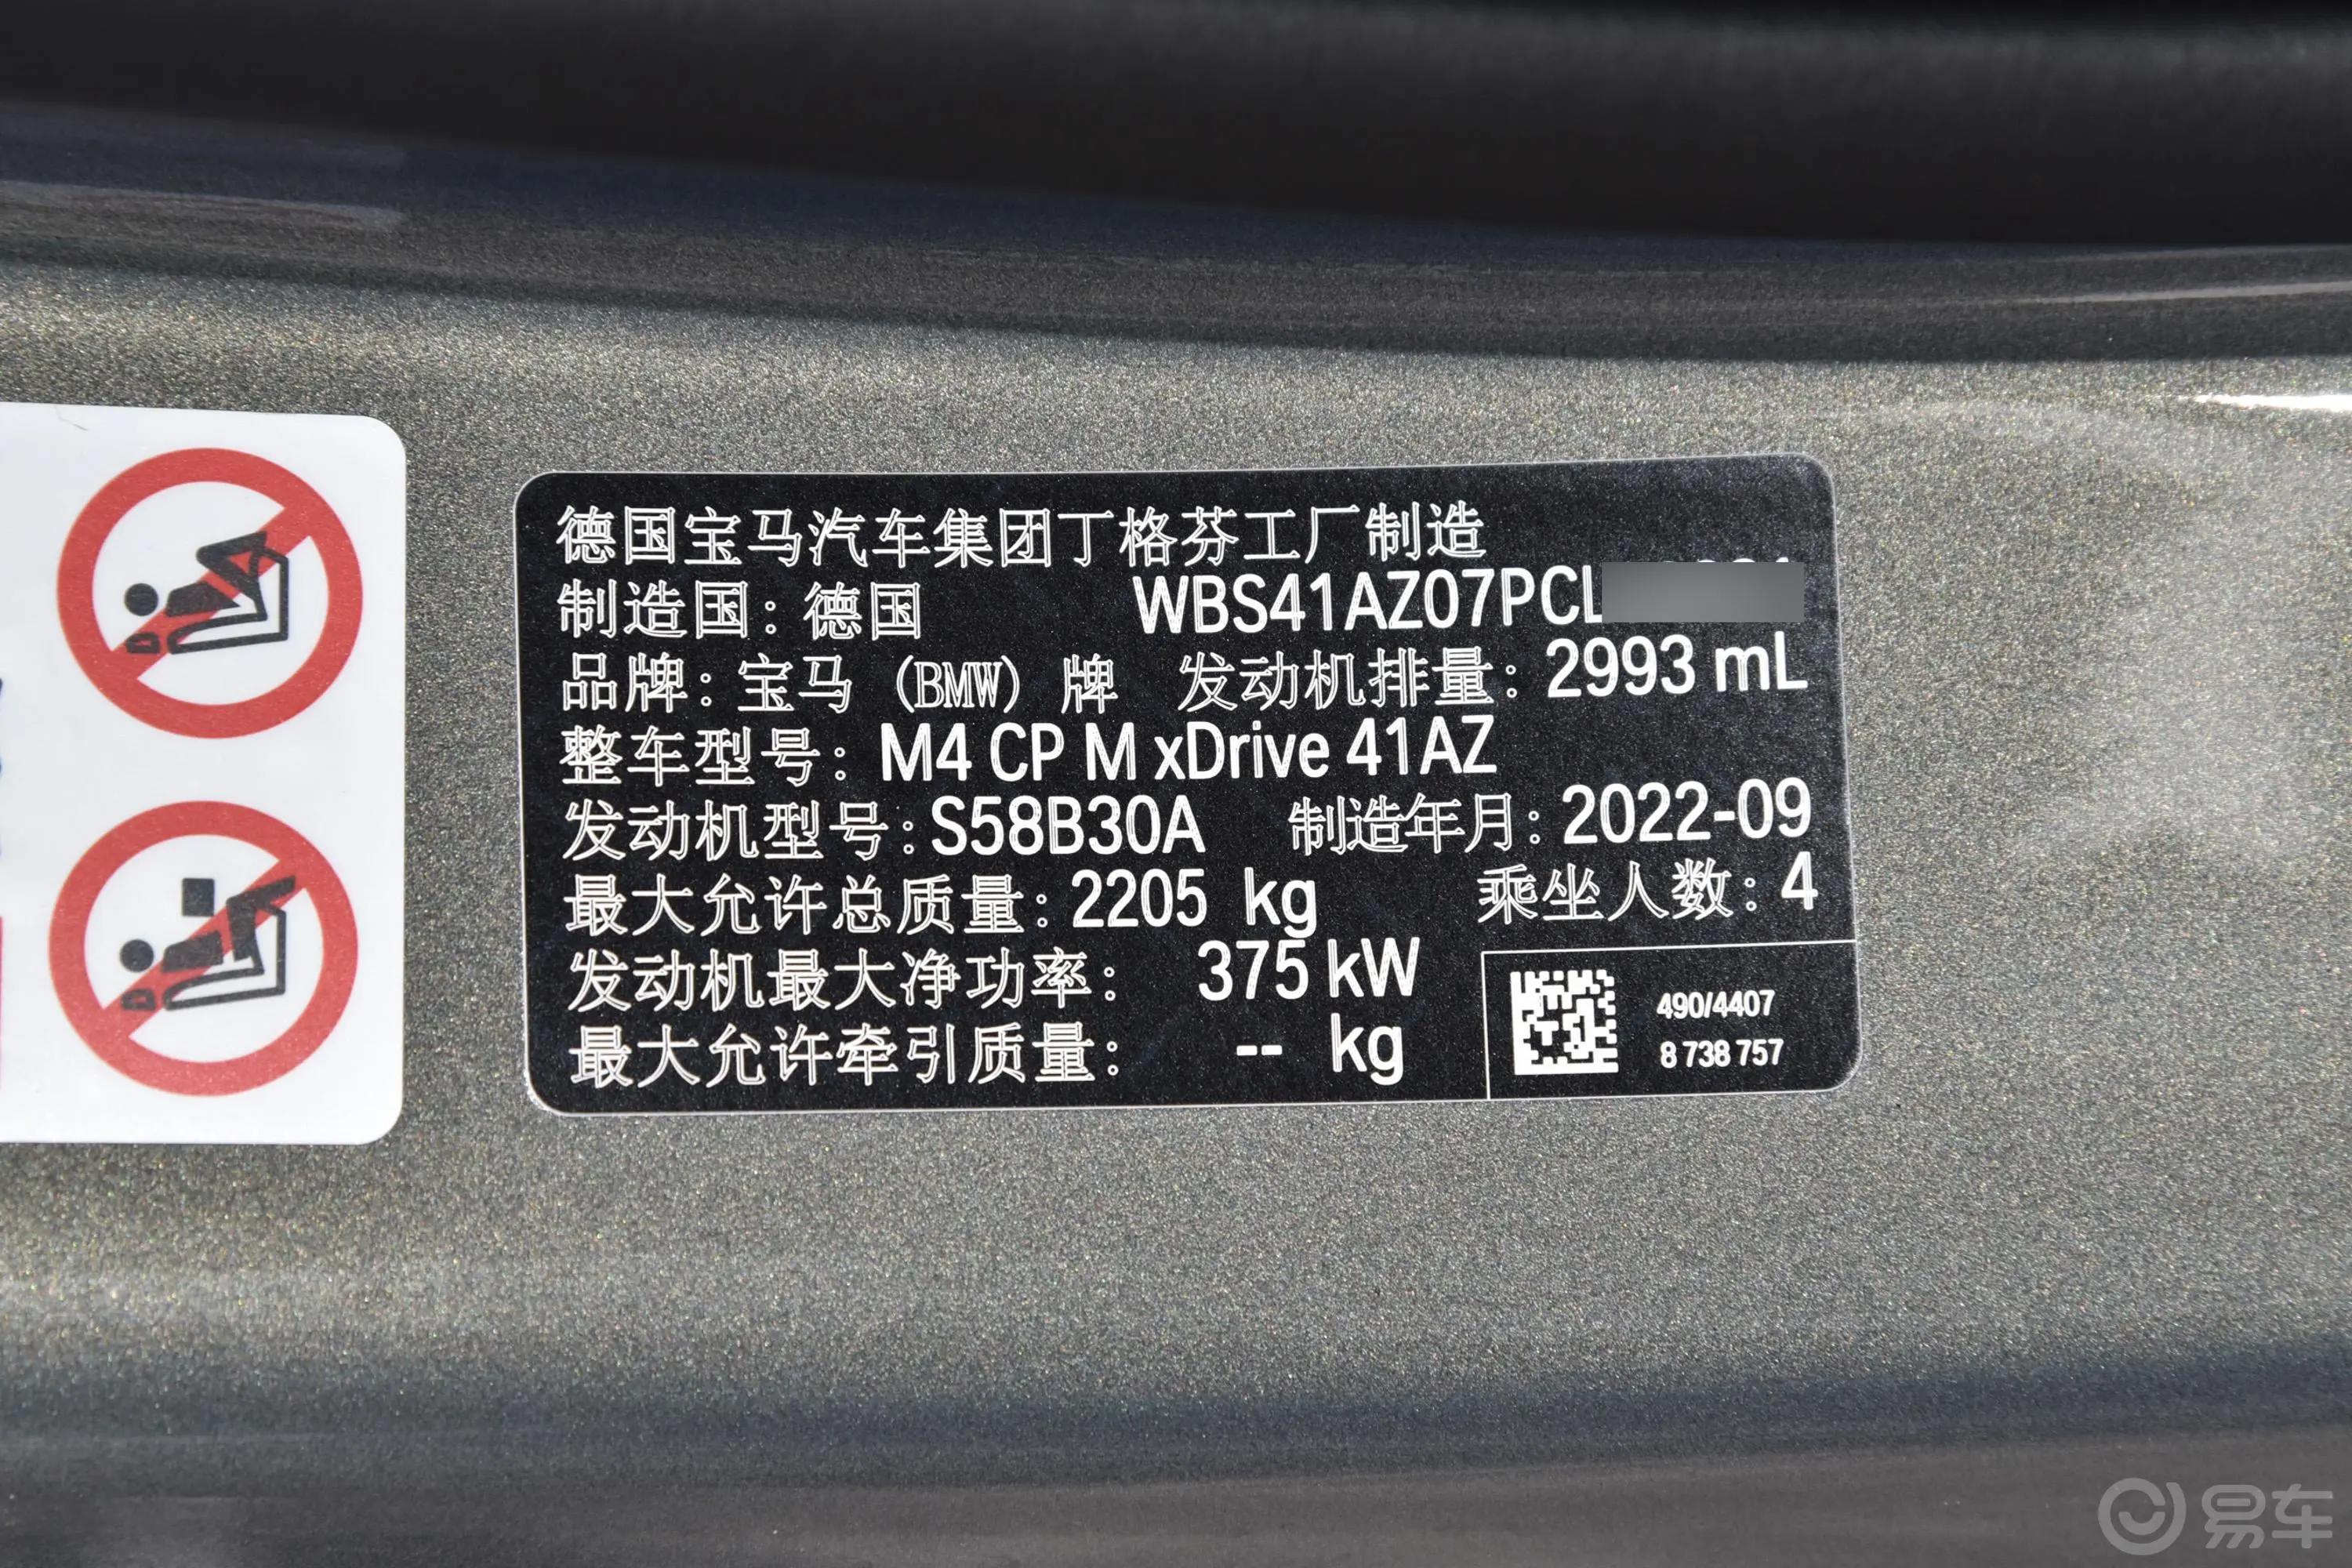 宝马M450周年版 M4 双门轿跑车 M xDrive 限量版车辆信息铭牌